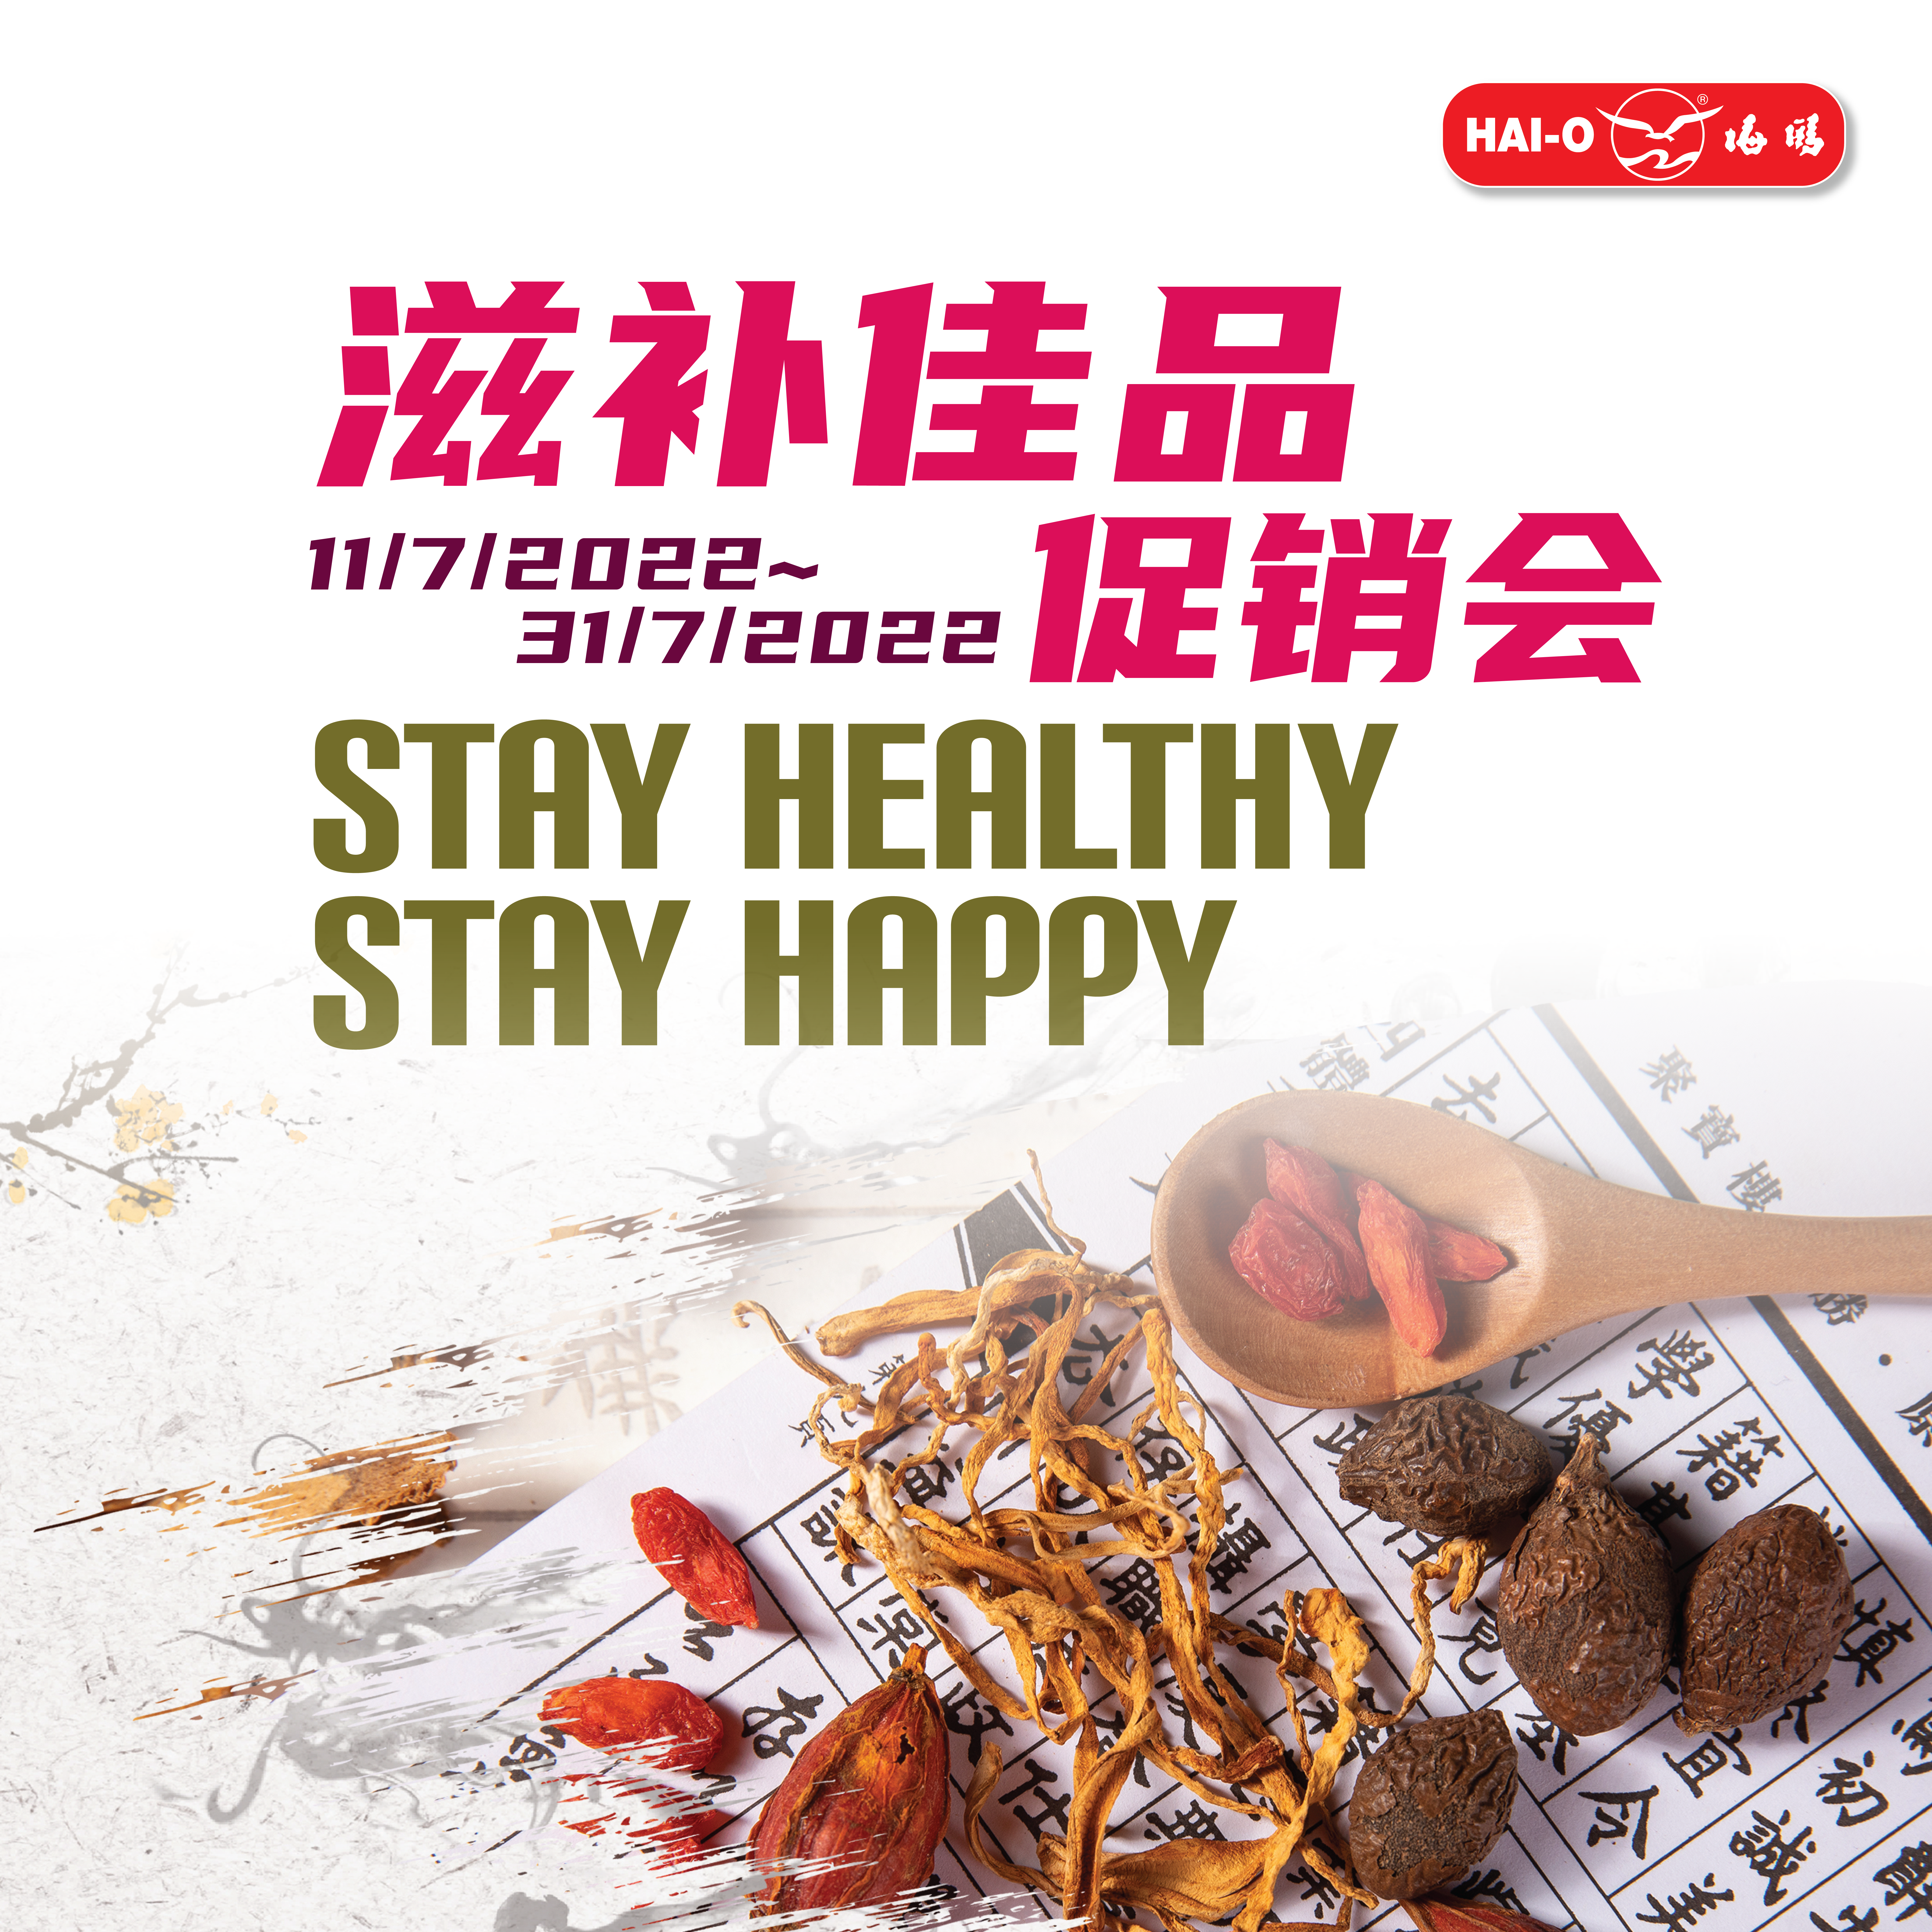 7月份滋补佳品促销会  StayHealthy, StayHappy  *Only available on Hai-O Chain Store